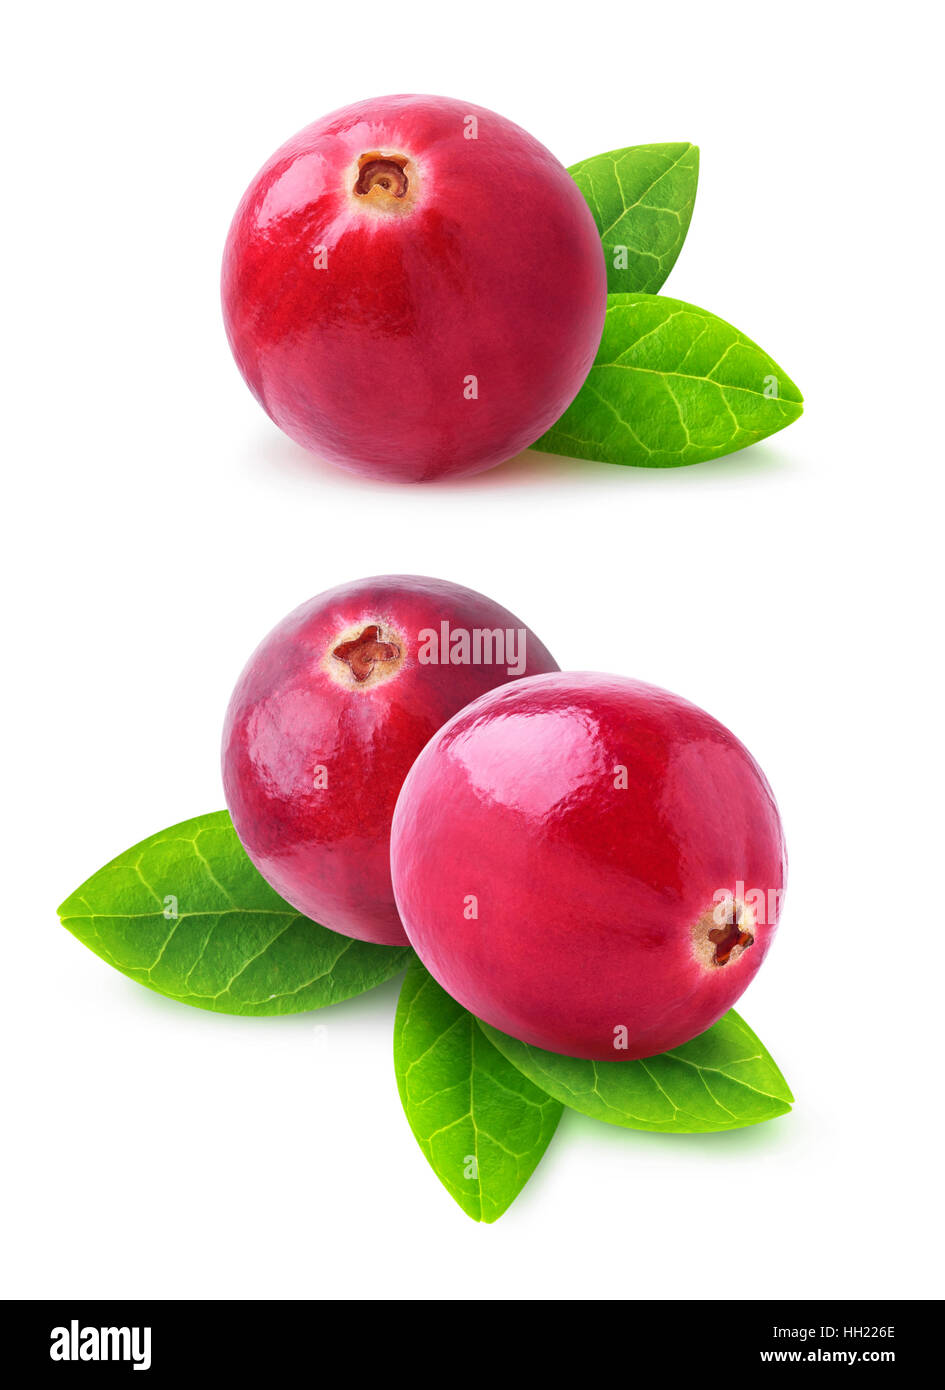 Isolato di mirtilli rossi. Due immagini del mirtillo palustre i frutti con foglie isolato su sfondo bianco con tracciato di ritaglio Foto Stock